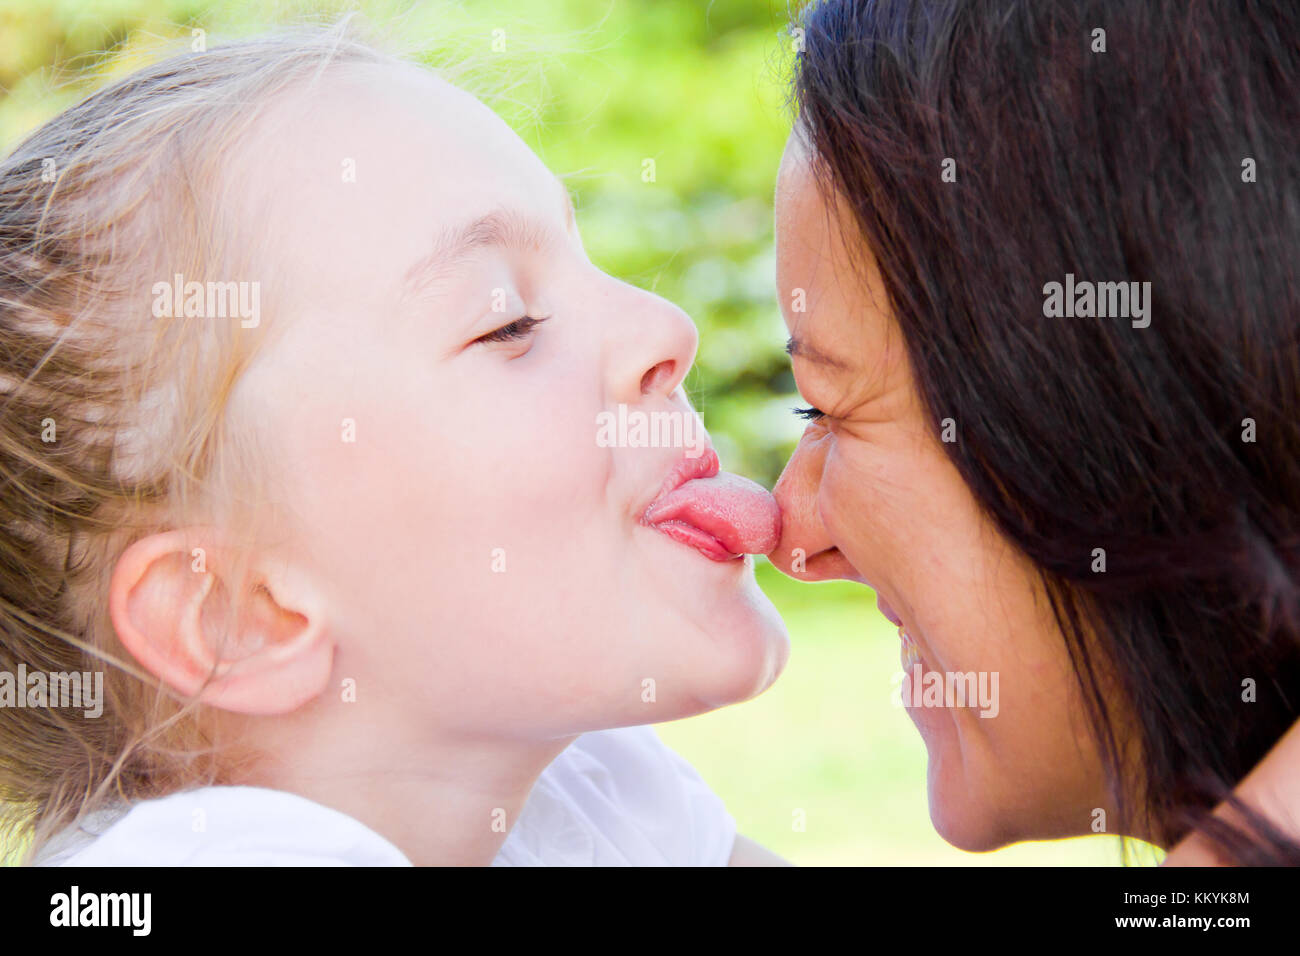 Лижет п маме. Мать целует дочь. Мама и дочь поцелуй с языком. Поцелуй мамы и дочери в губы. Мама целует дочку в губы.